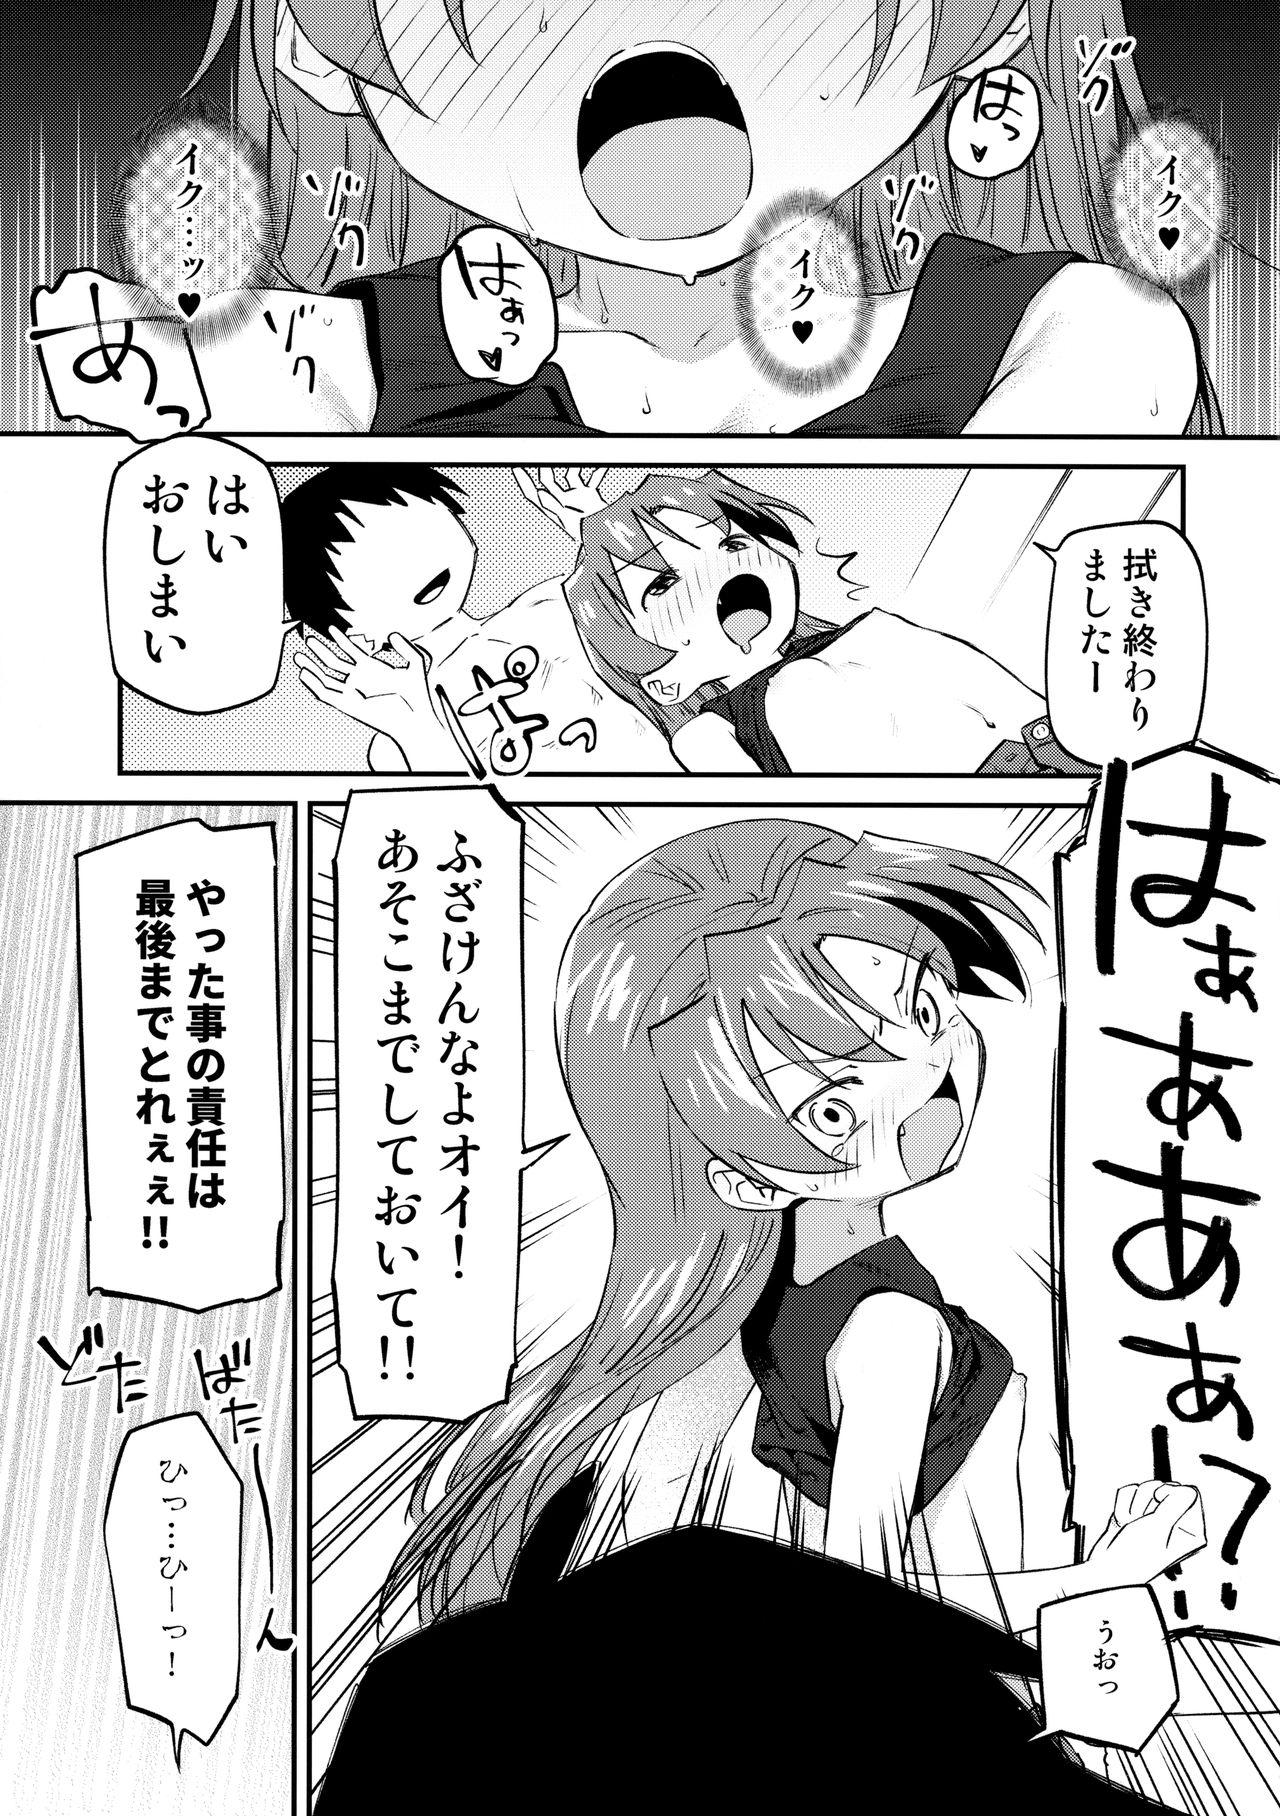 Roughsex Kyouko to Are Suru Hon 3 - Puella magi madoka magica Tied - Page 10